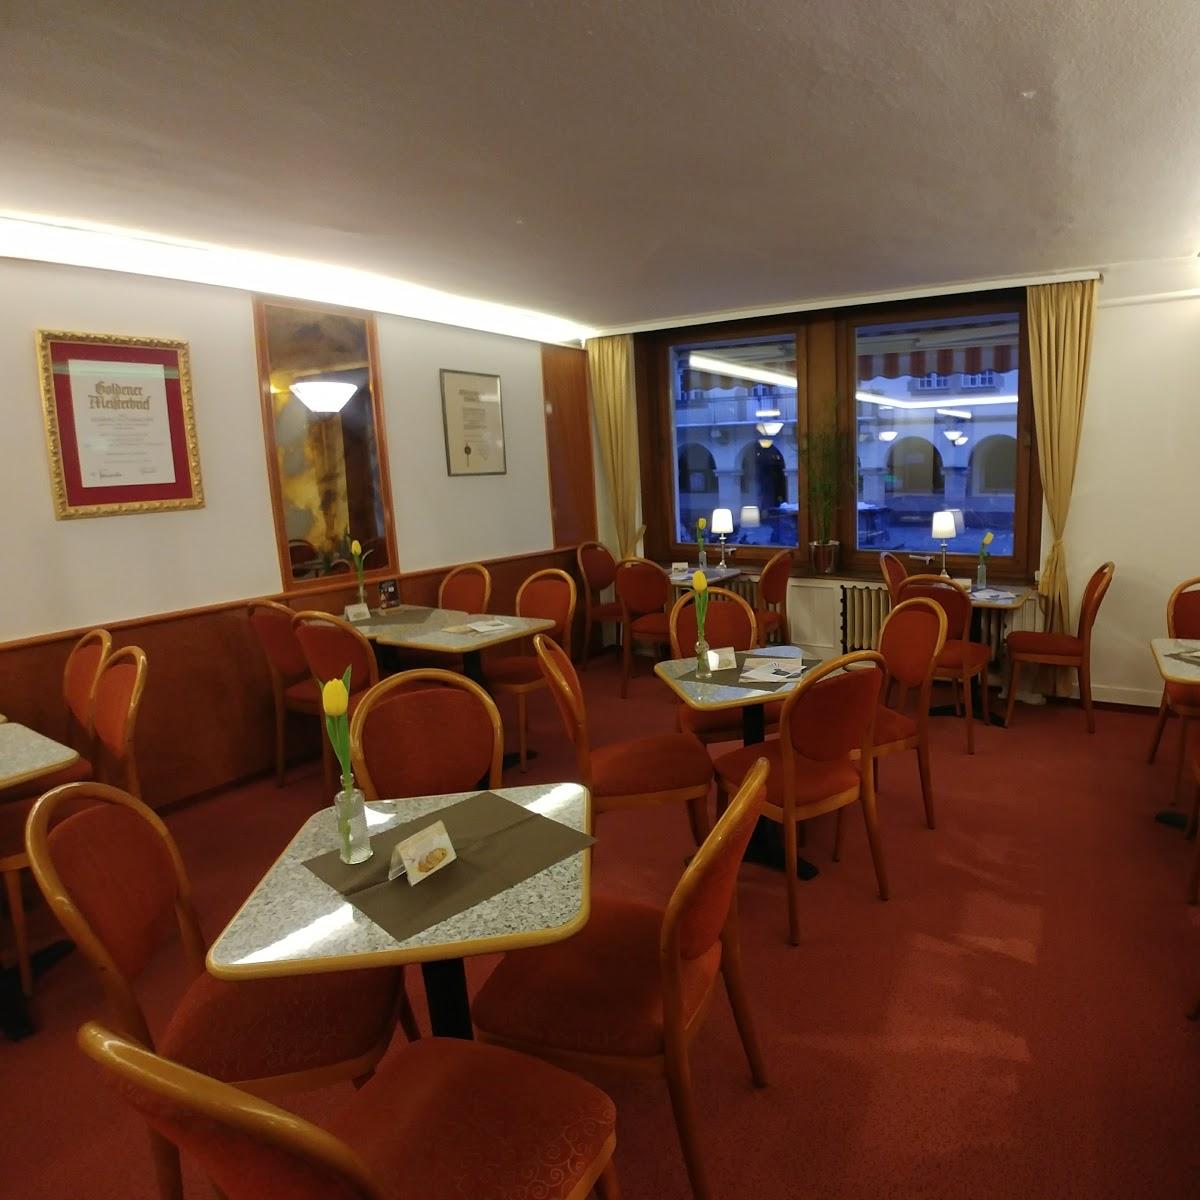 Restaurant "Hofkonditorei Huthmacher - Café Seelos" in Sigmaringen